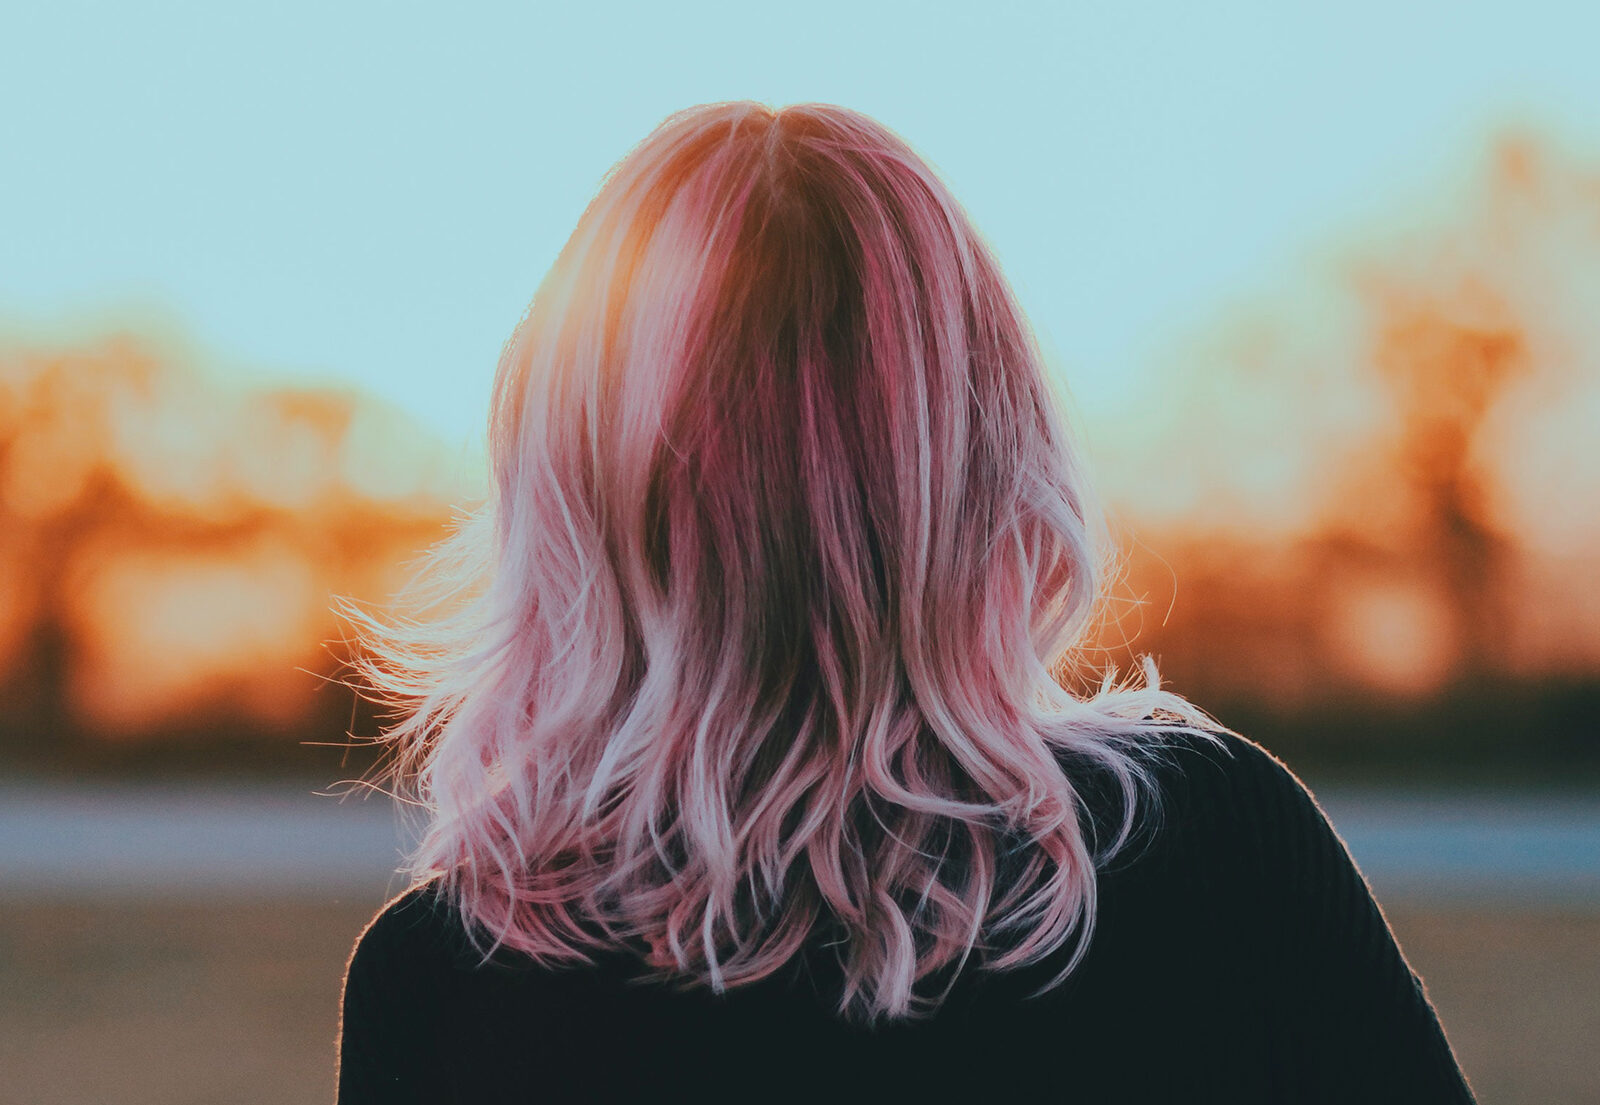 ¿Quieres saber cómo conseguir colores fantasía a la vez que cabellos sanos?